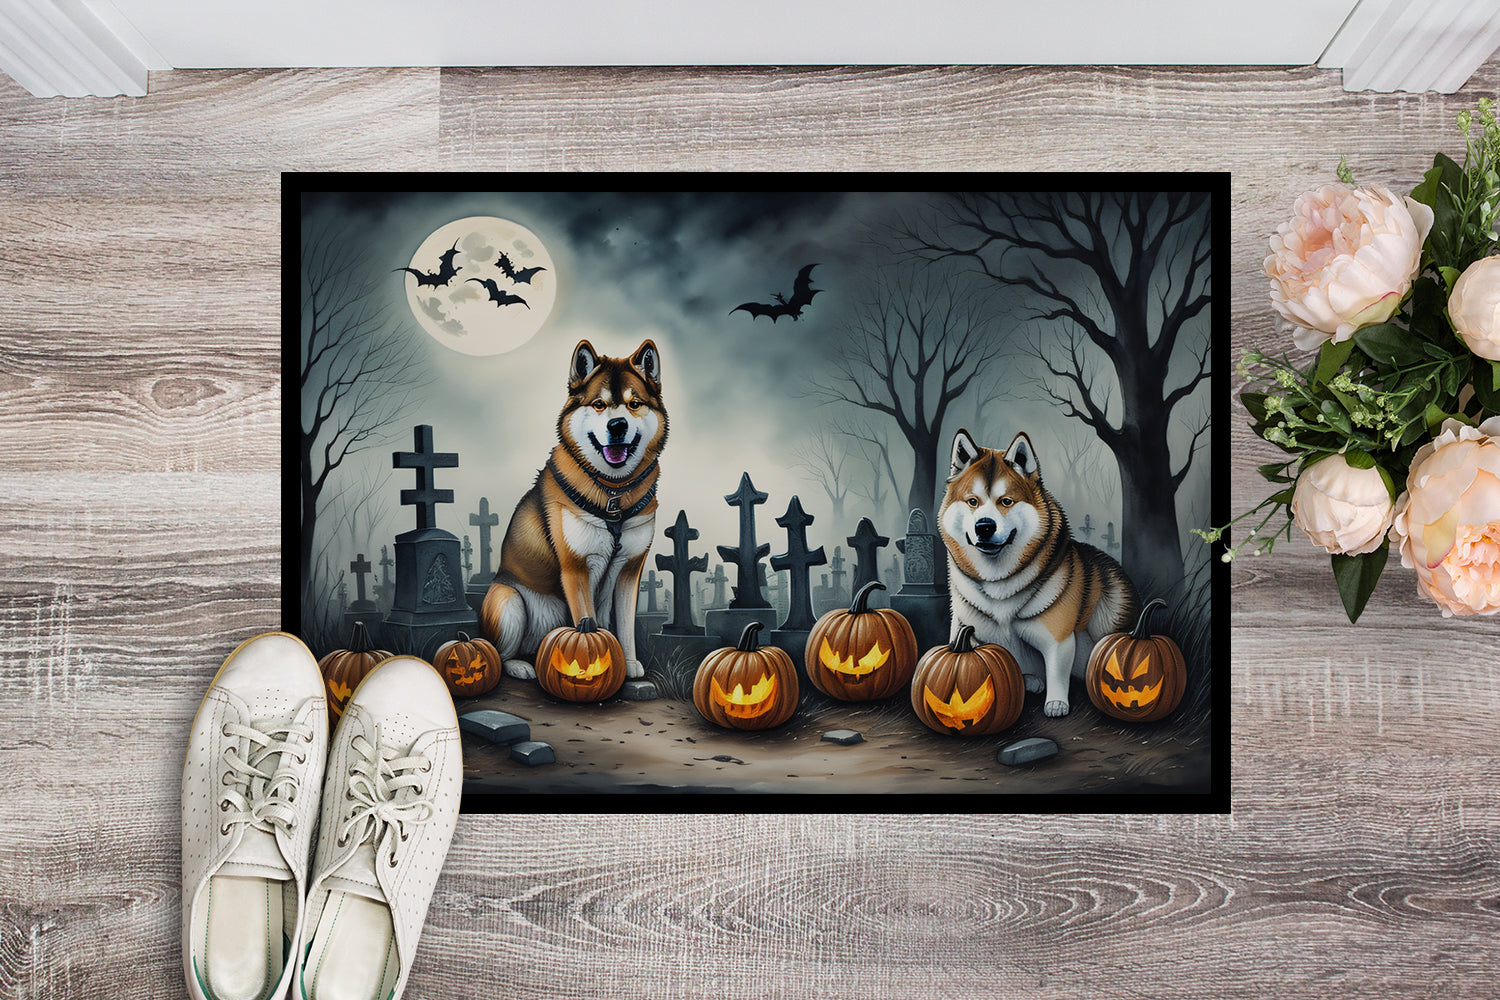 Buy this Akita Spooky Halloween Doormat 18x27